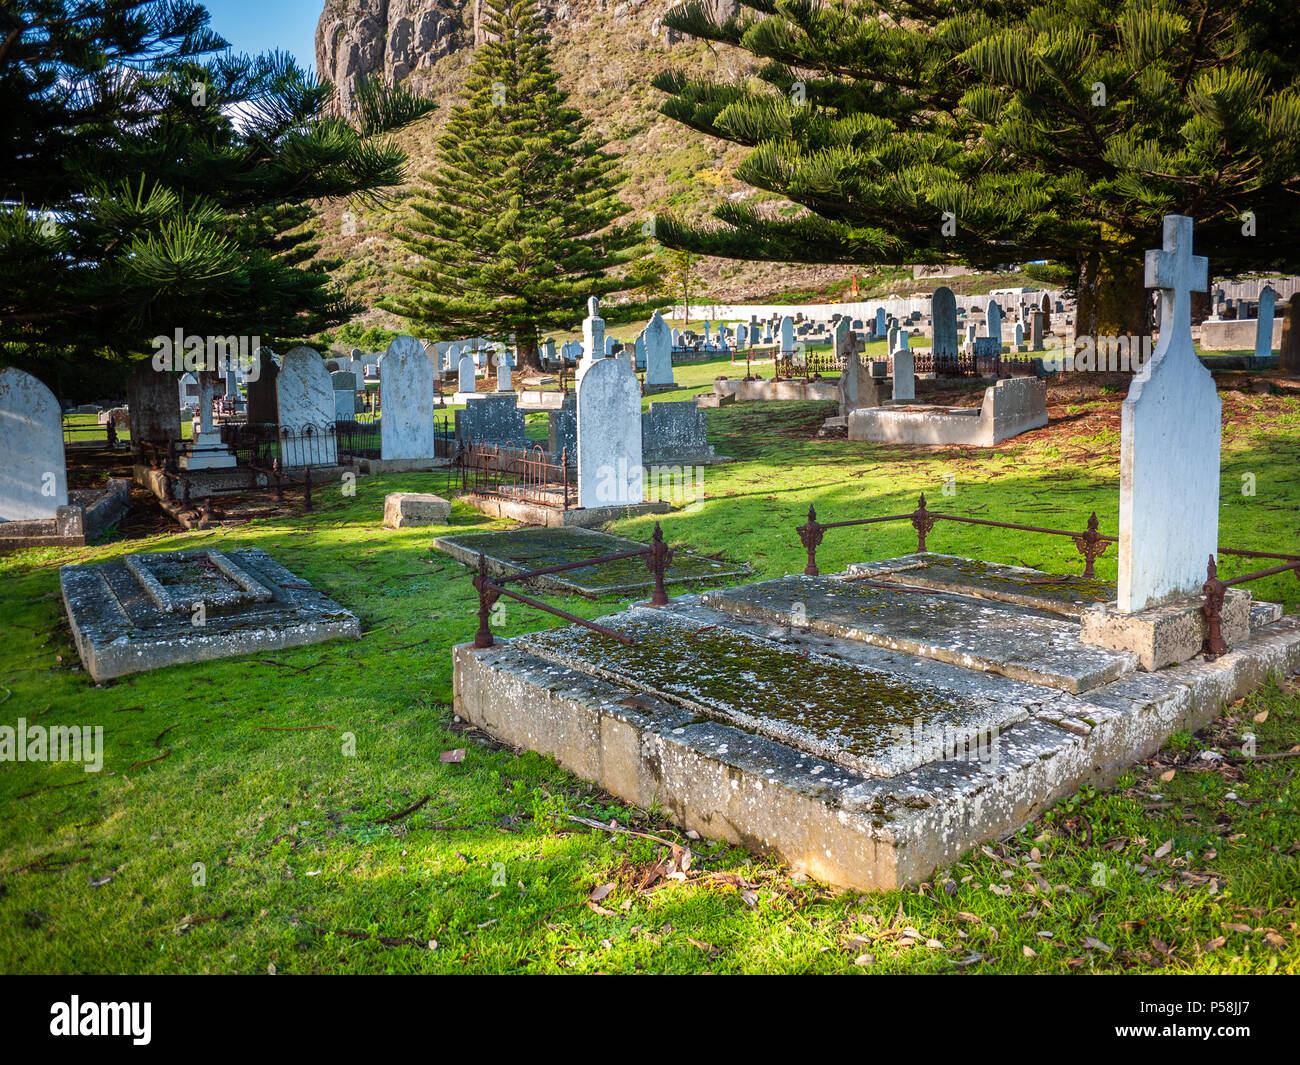 La pierre tombale et tombes de cimetière. Vieilles tombes de pierre dans son cimetière. Vieux Cimetière Stanley, ville de Stanley, Tasmanie, Australie Banque D'Images